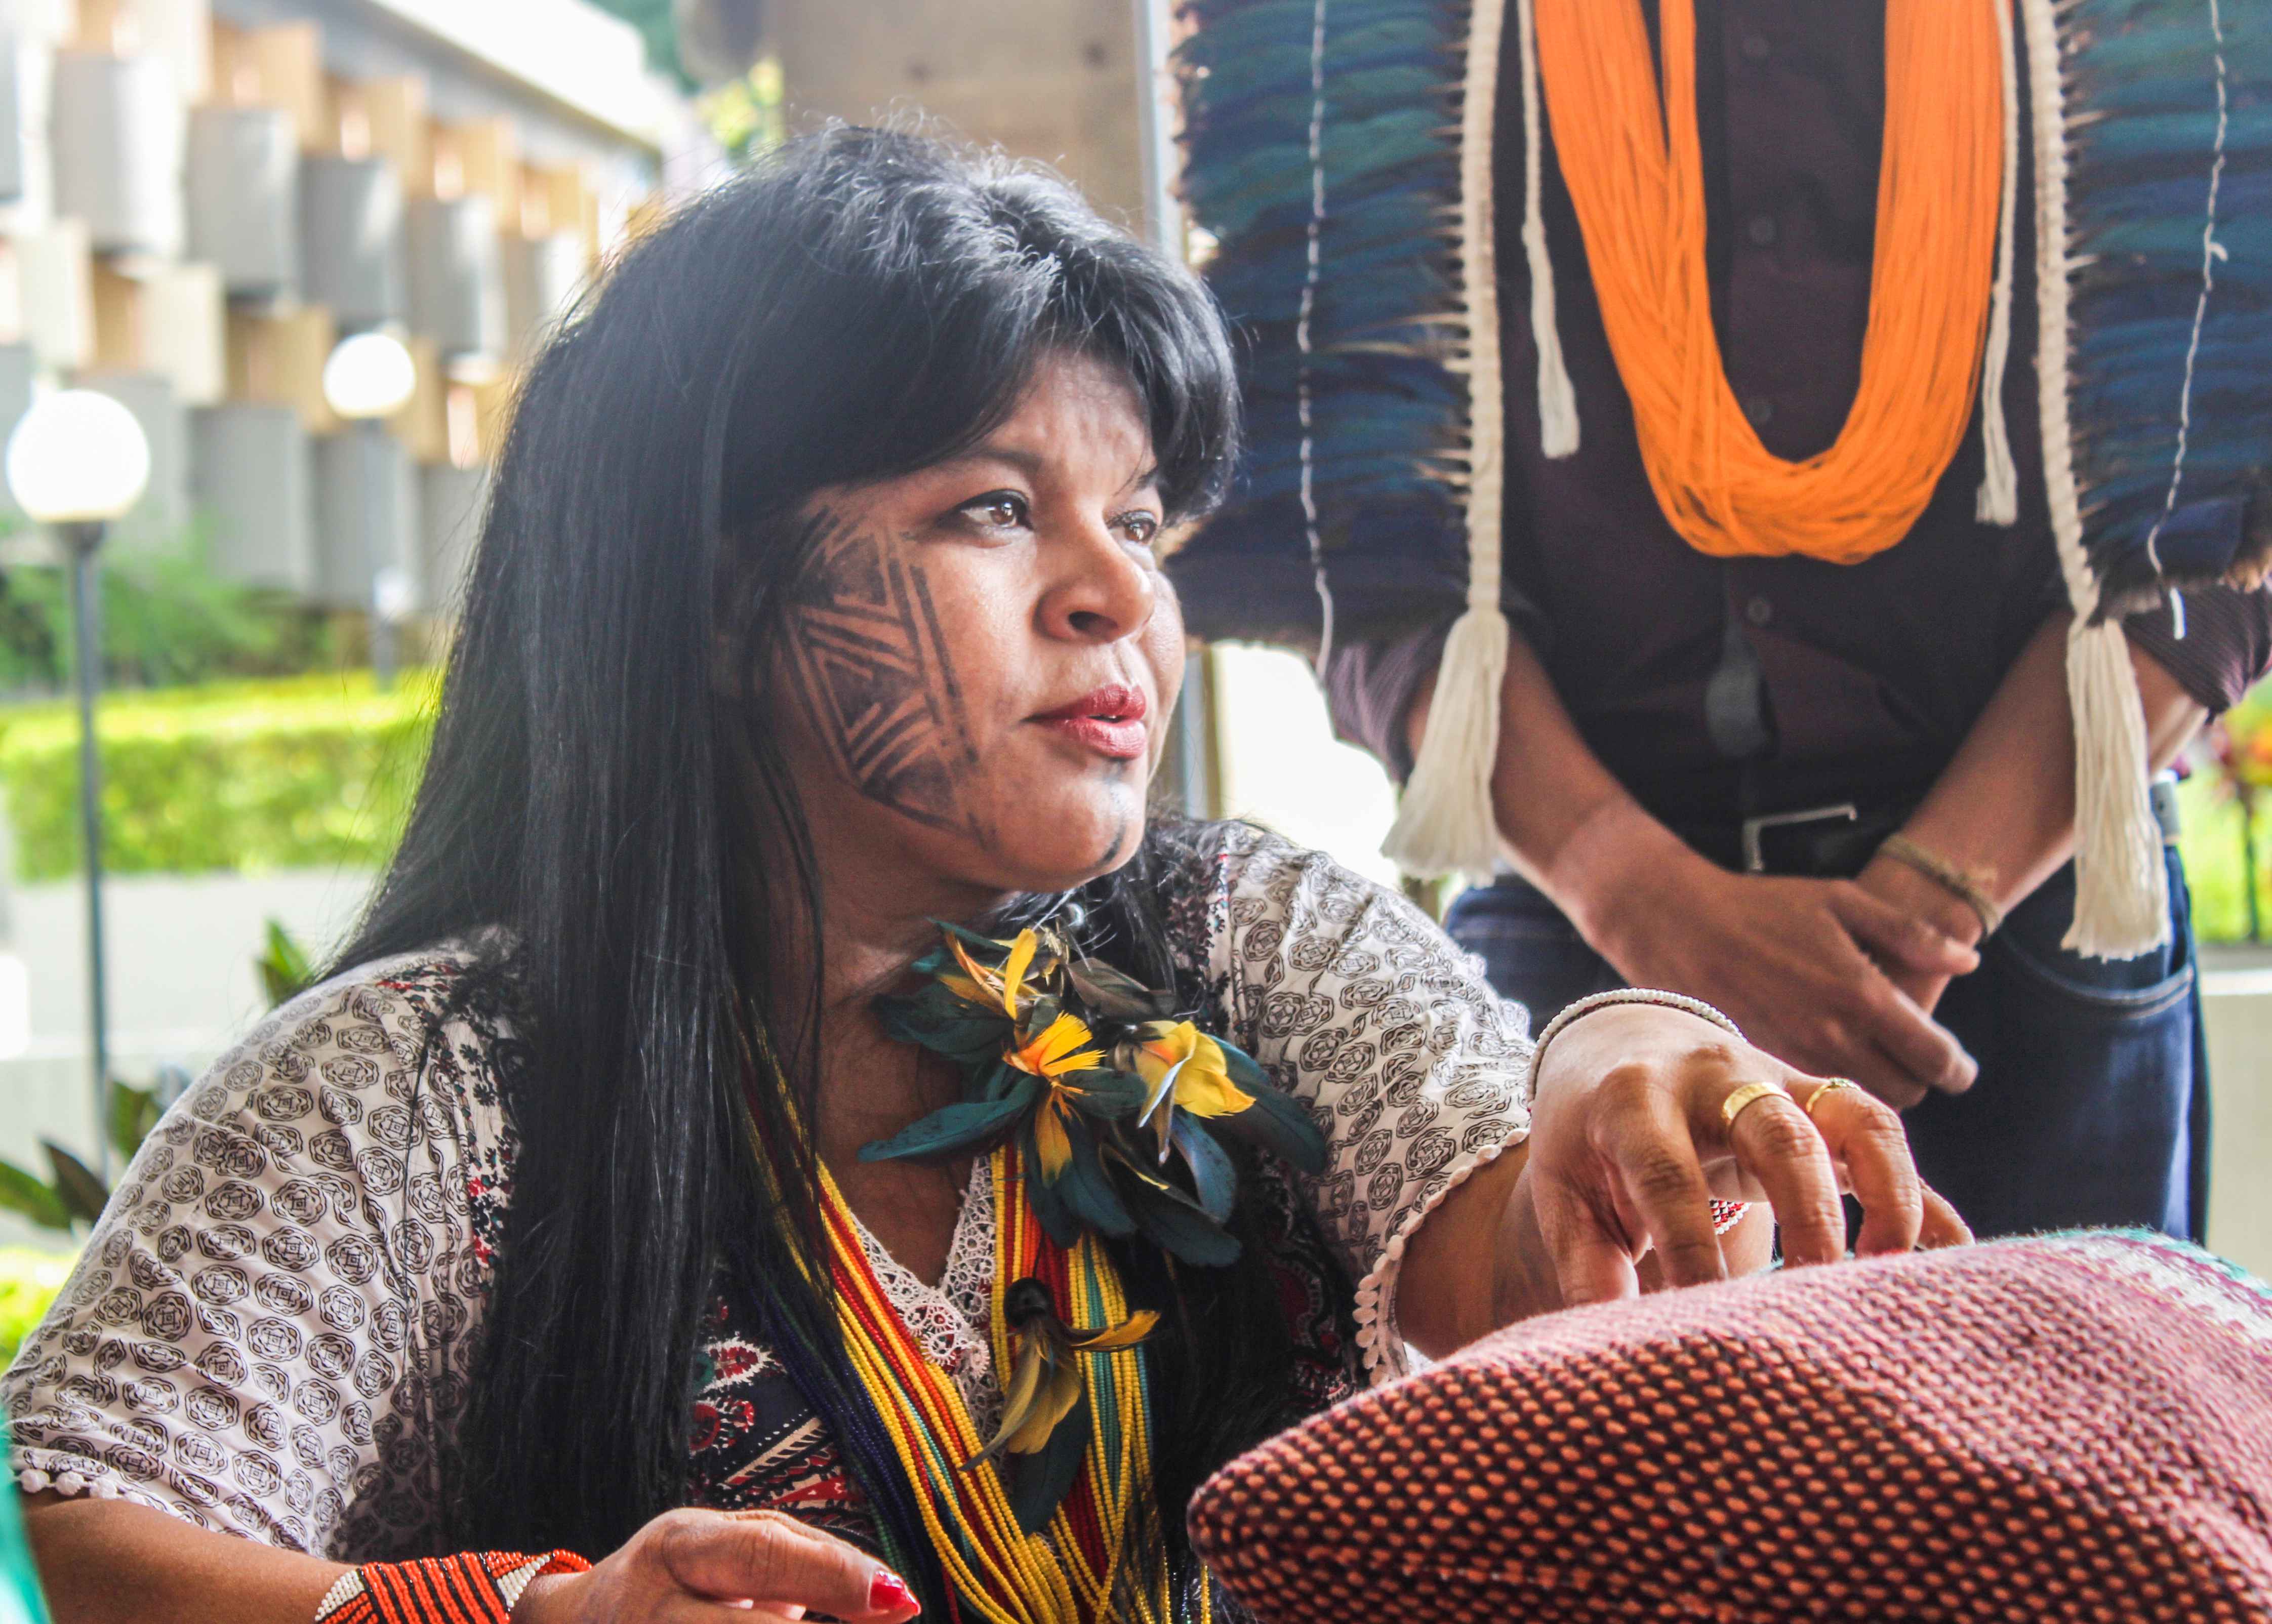 Liderança de Sonia Guajajara alcança cerca de 300 povos indígenas